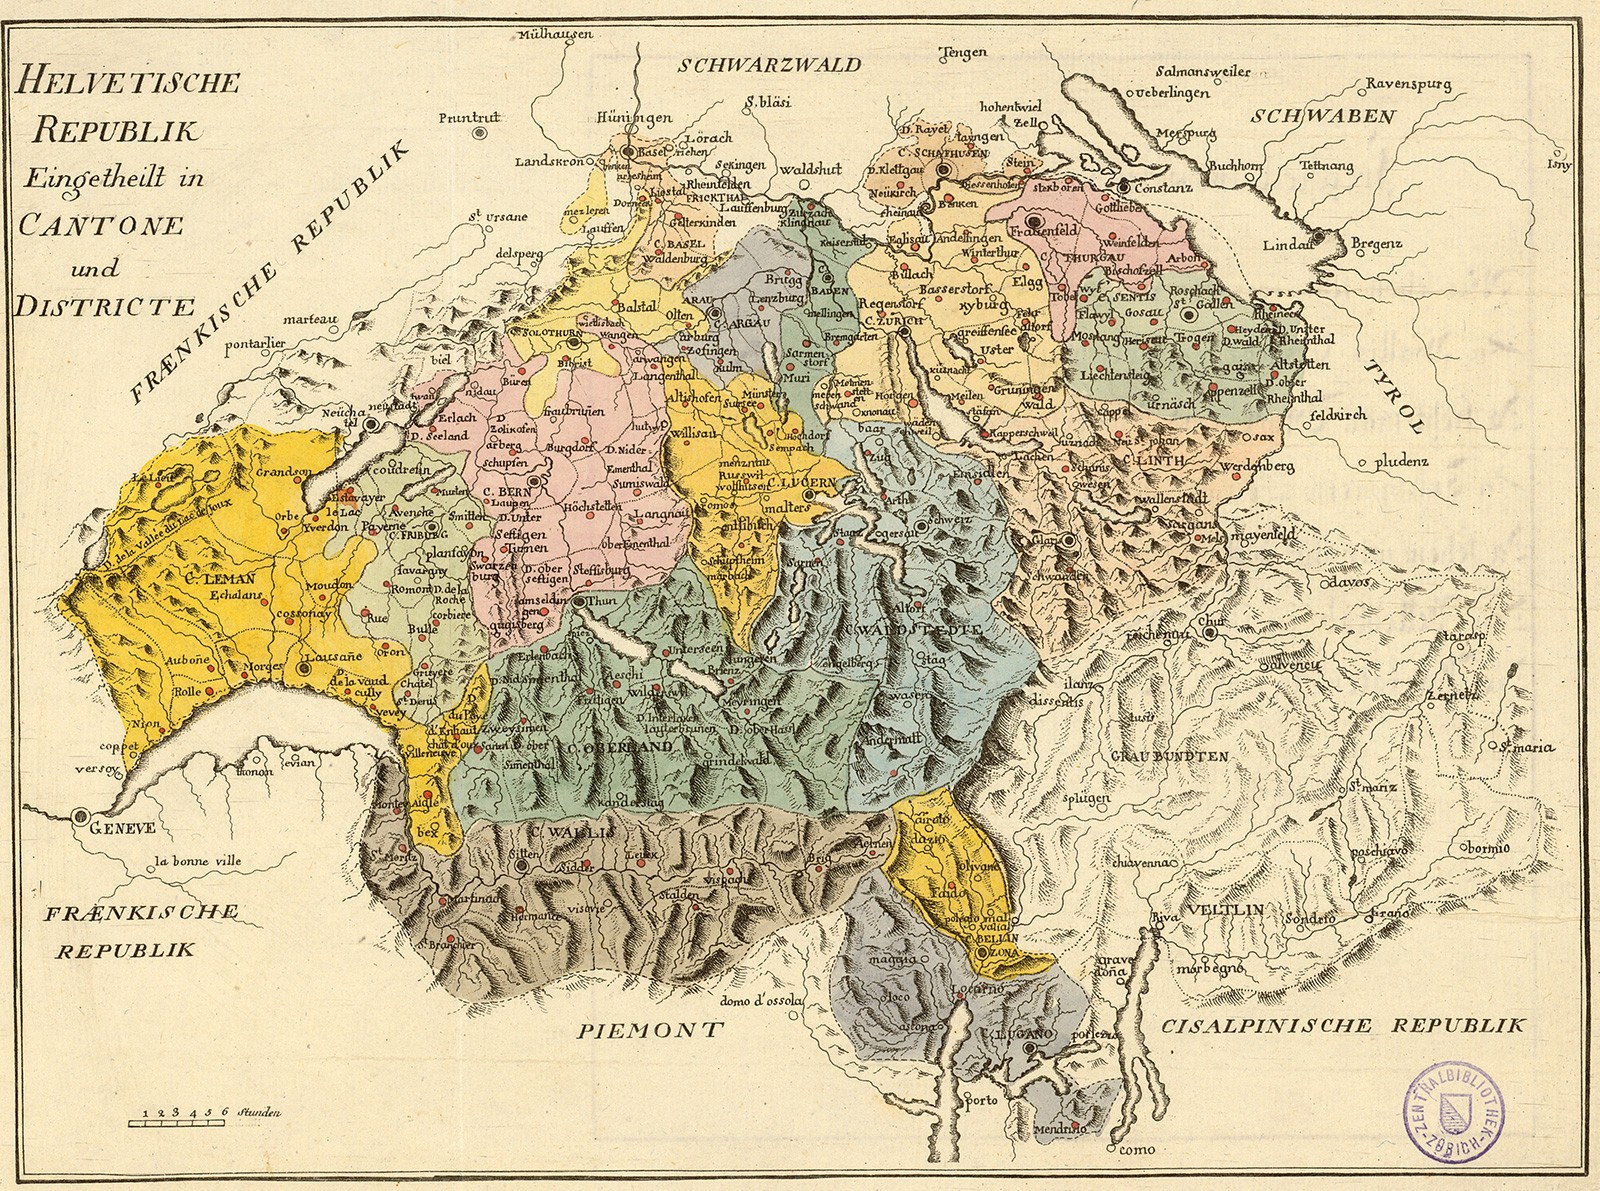 خريطة للجمهورية الهلفيتية وكانتوناتها من عام 1799. تم بعد ذلك تقسيم منطقة كانتون تيتشينو اليوم إلى كانتوني بيلينزونا (الأصفر) ولوغانو (الأزرق).